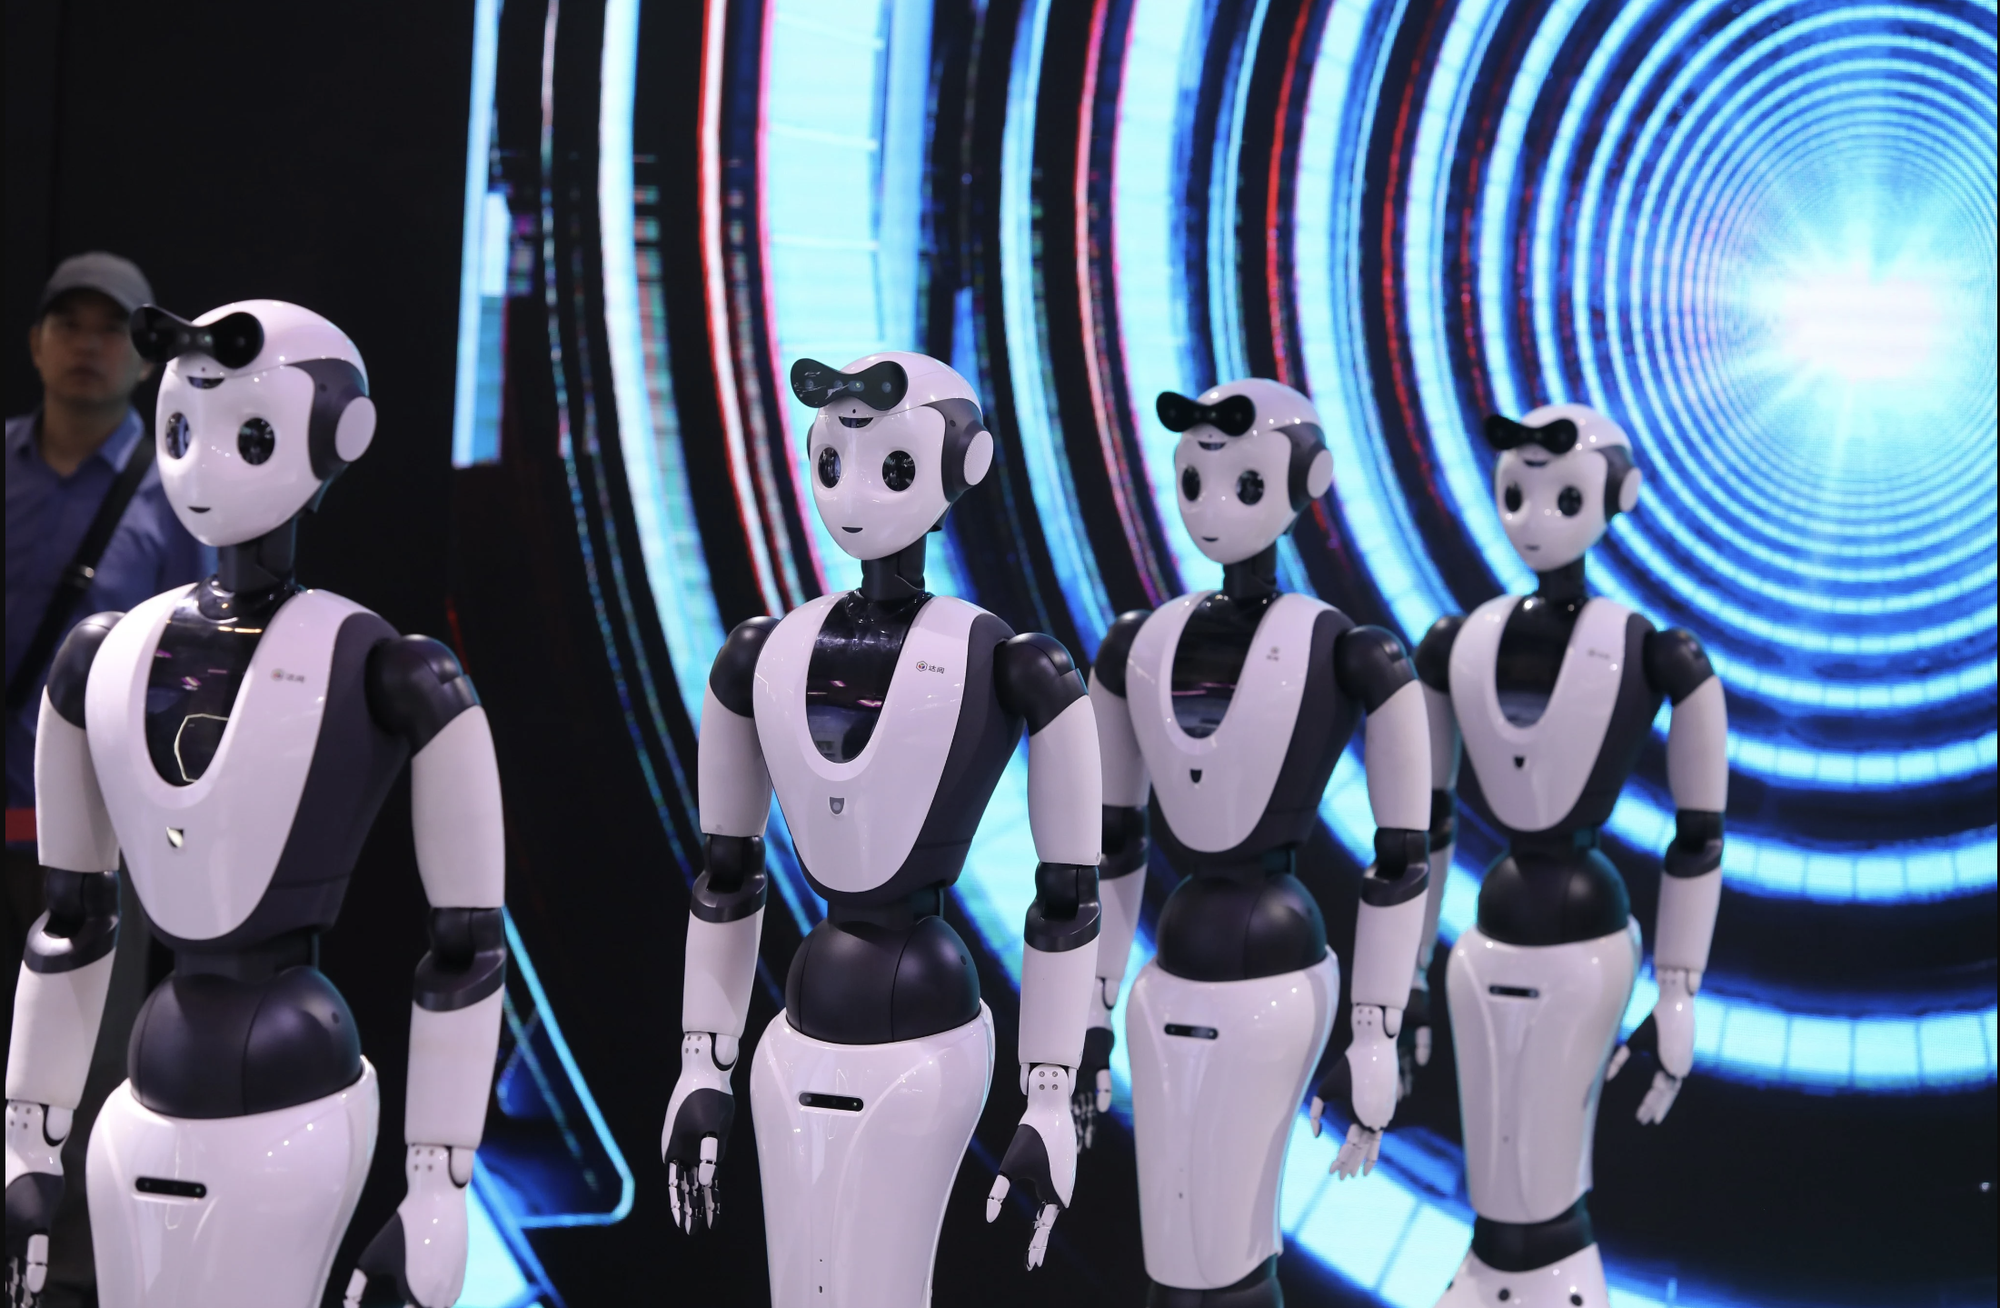 Một nhóm robot đang trình diễn khả năng múa trên sâu khấu chính của sự kiện - Ảnh: SIMON SONG